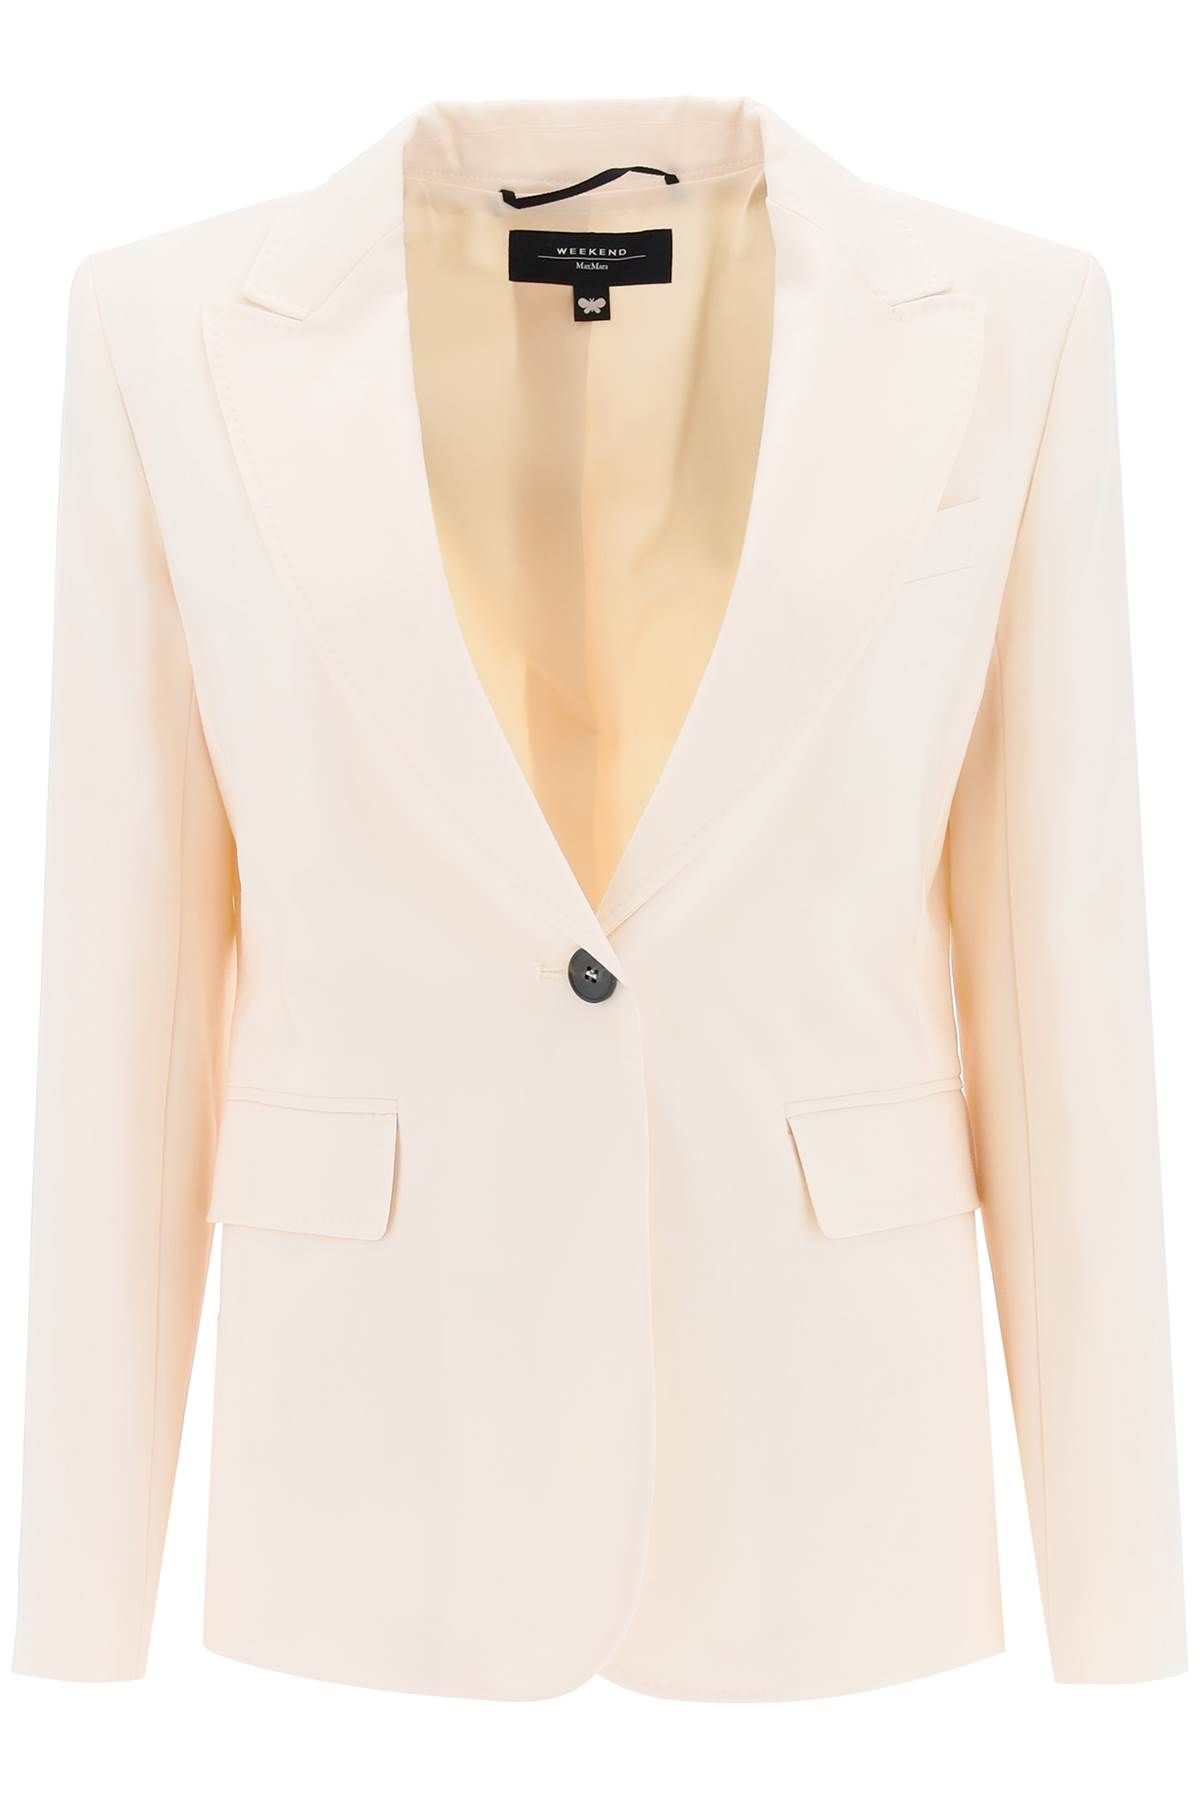 Weekend Max Mara 'valda' Single-breasted Jacket In White